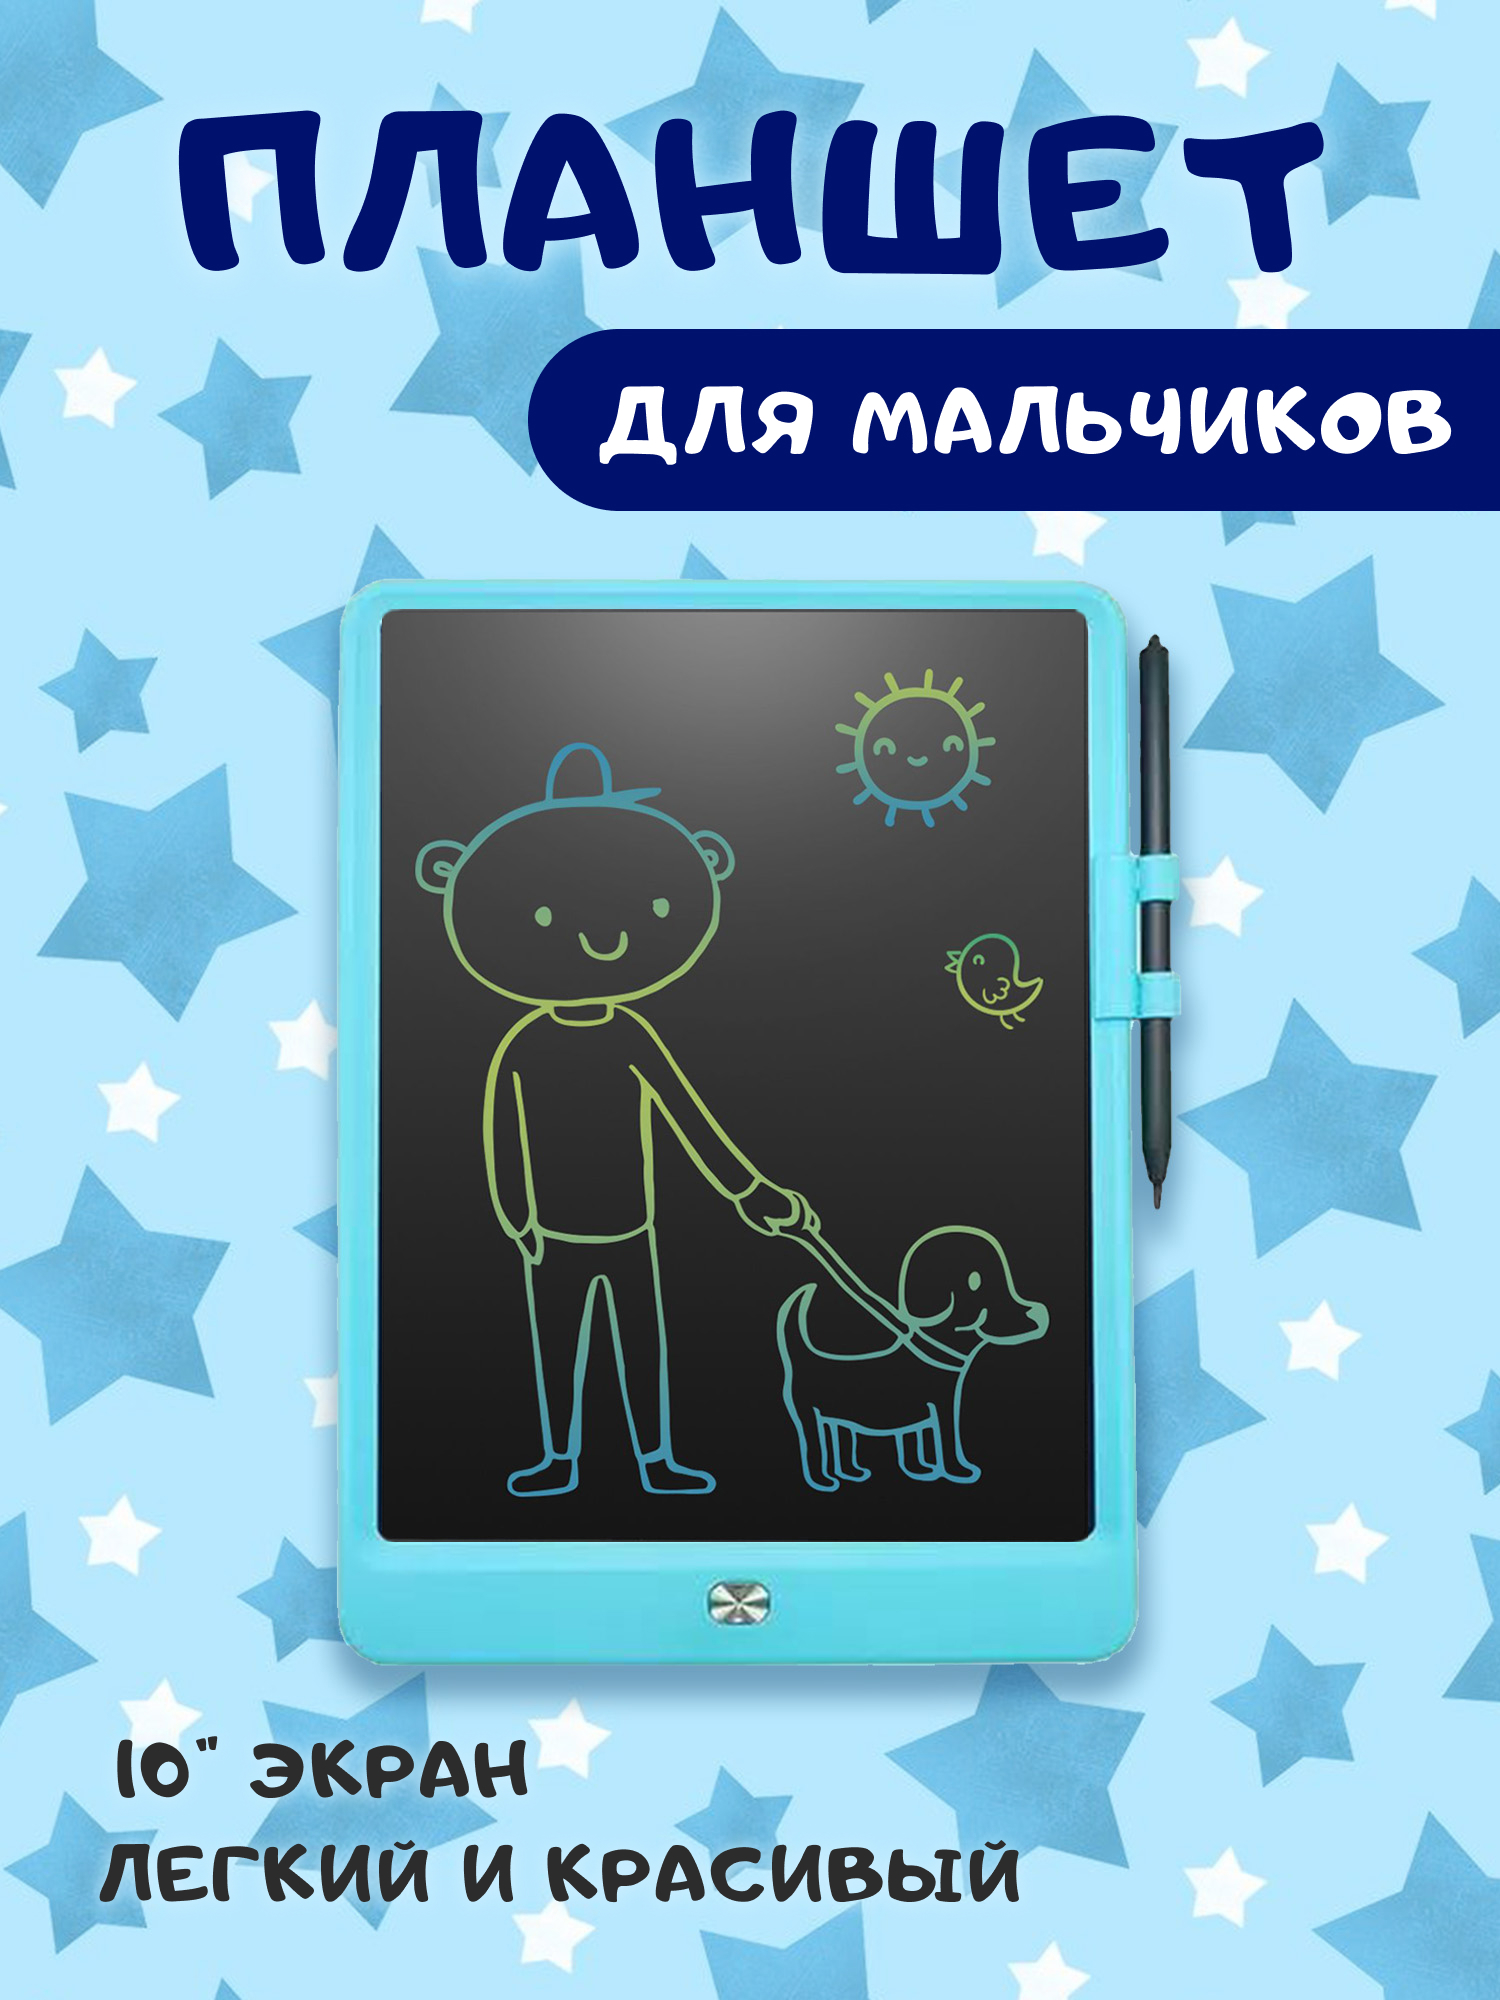 Детский планшет для рисования 10 дюймов, голубой bondibon планшет котик монохромный жидкокристаллический экран 8 дюймов